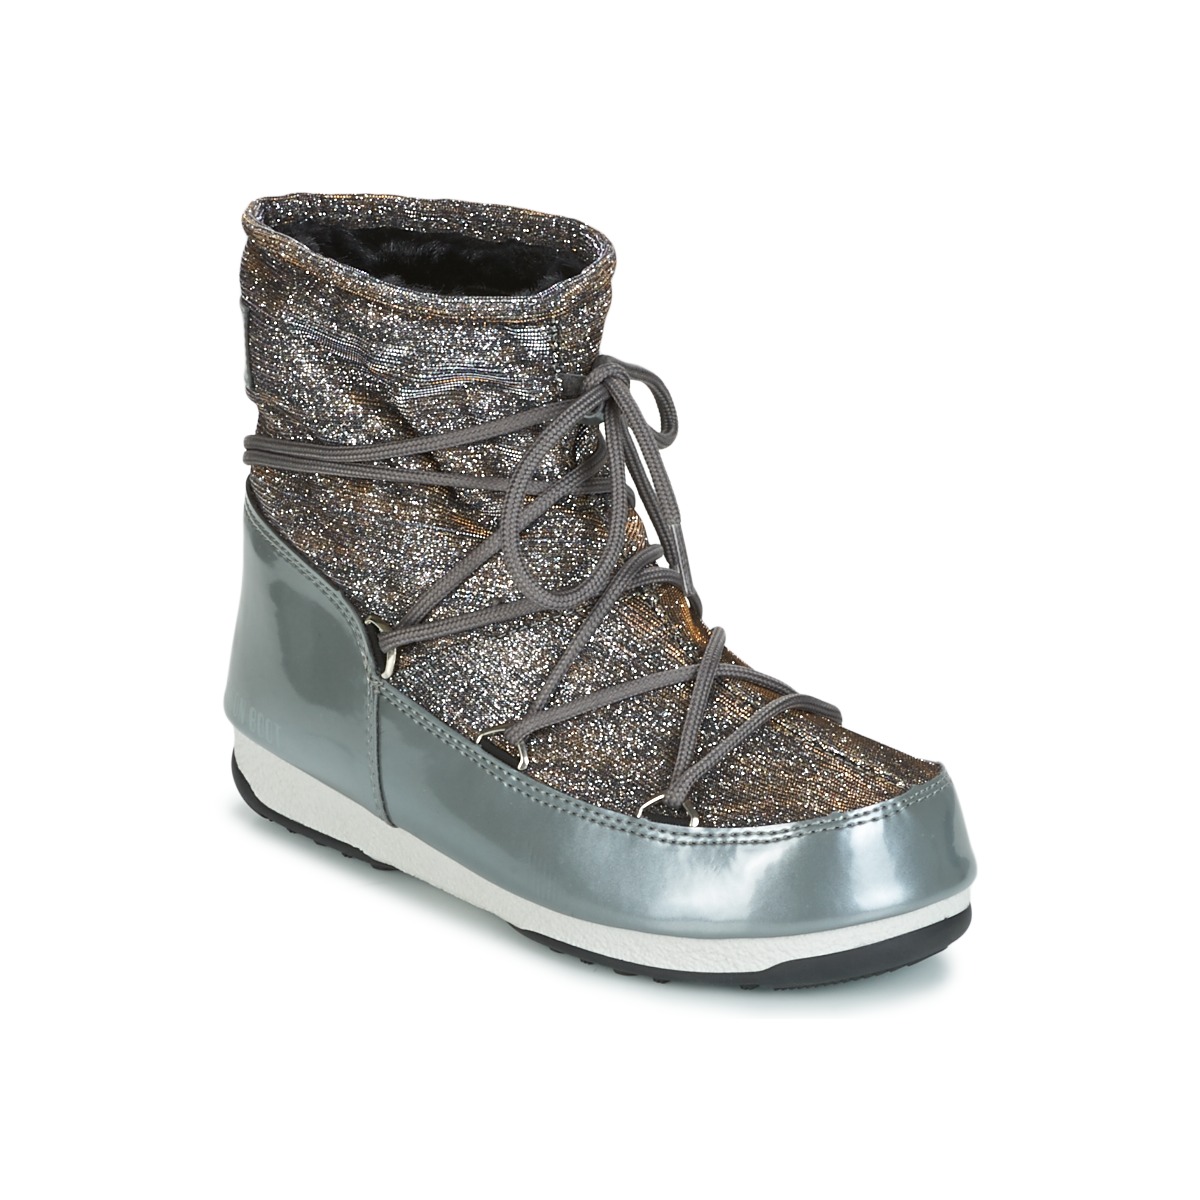 Chaussures Femme Bottes de neige Moon Boot MOON BOOT LOW LUREX Gris / Argent